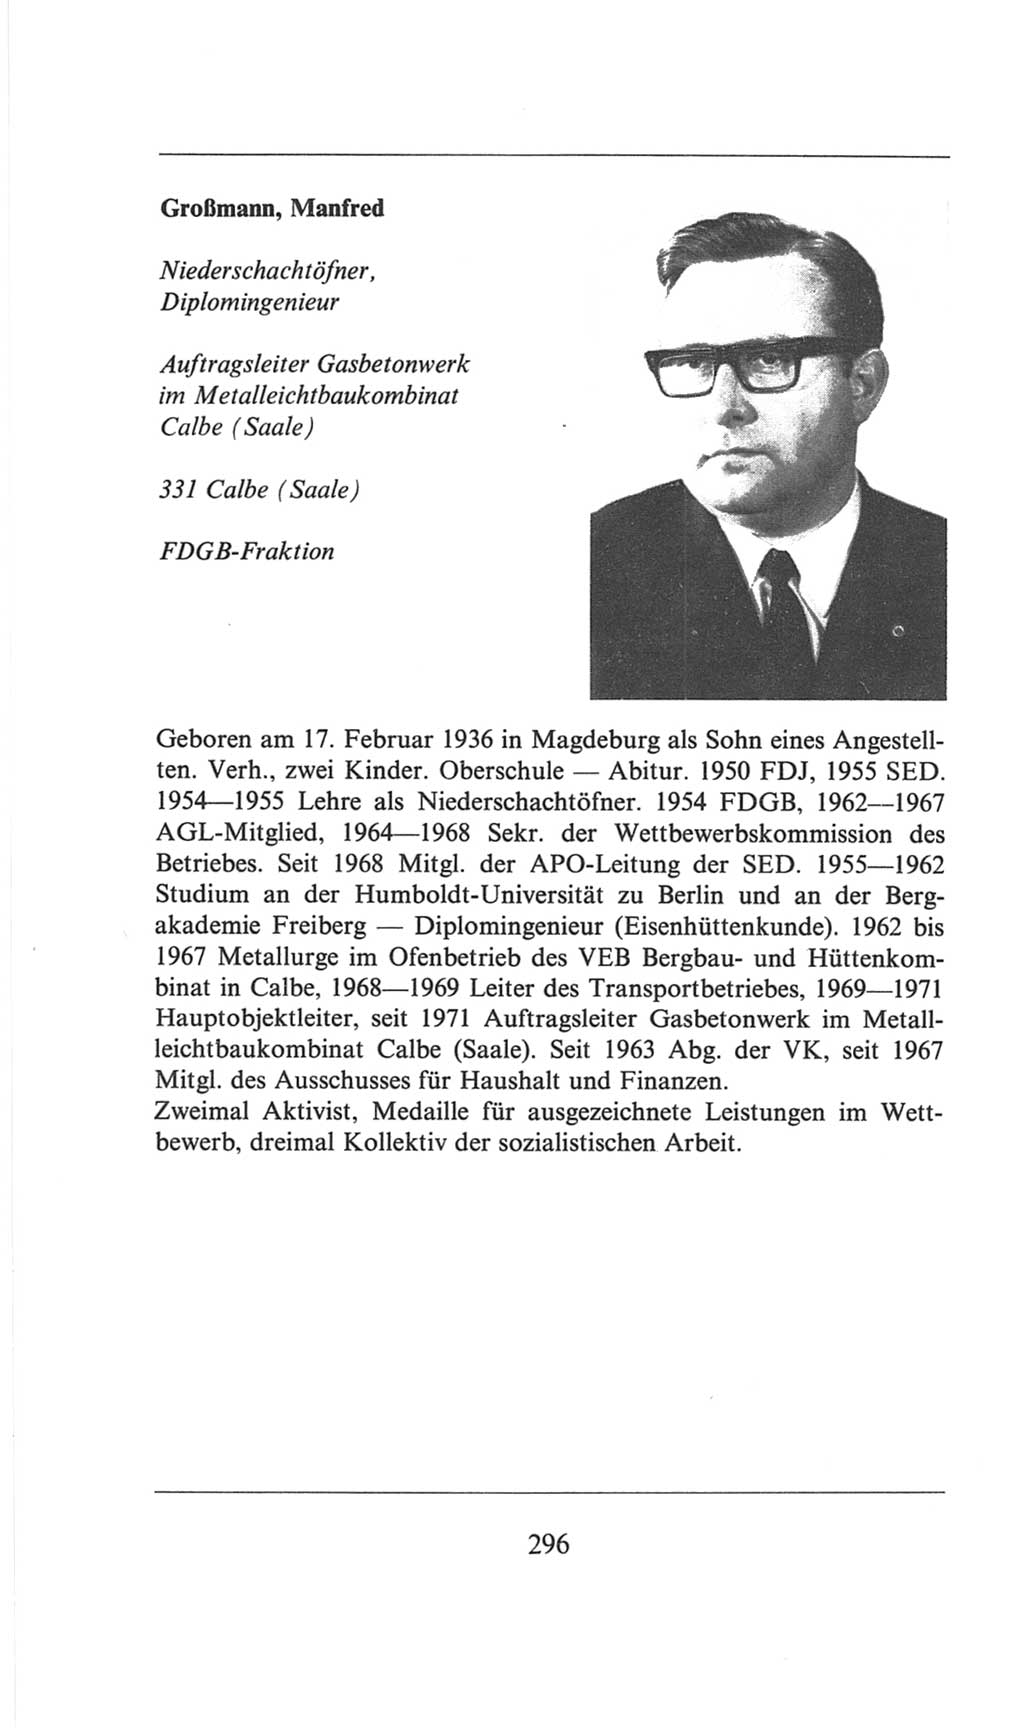 Volkskammer (VK) der Deutschen Demokratischen Republik (DDR), 6. Wahlperiode 1971-1976, Seite 296 (VK. DDR 6. WP. 1971-1976, S. 296)